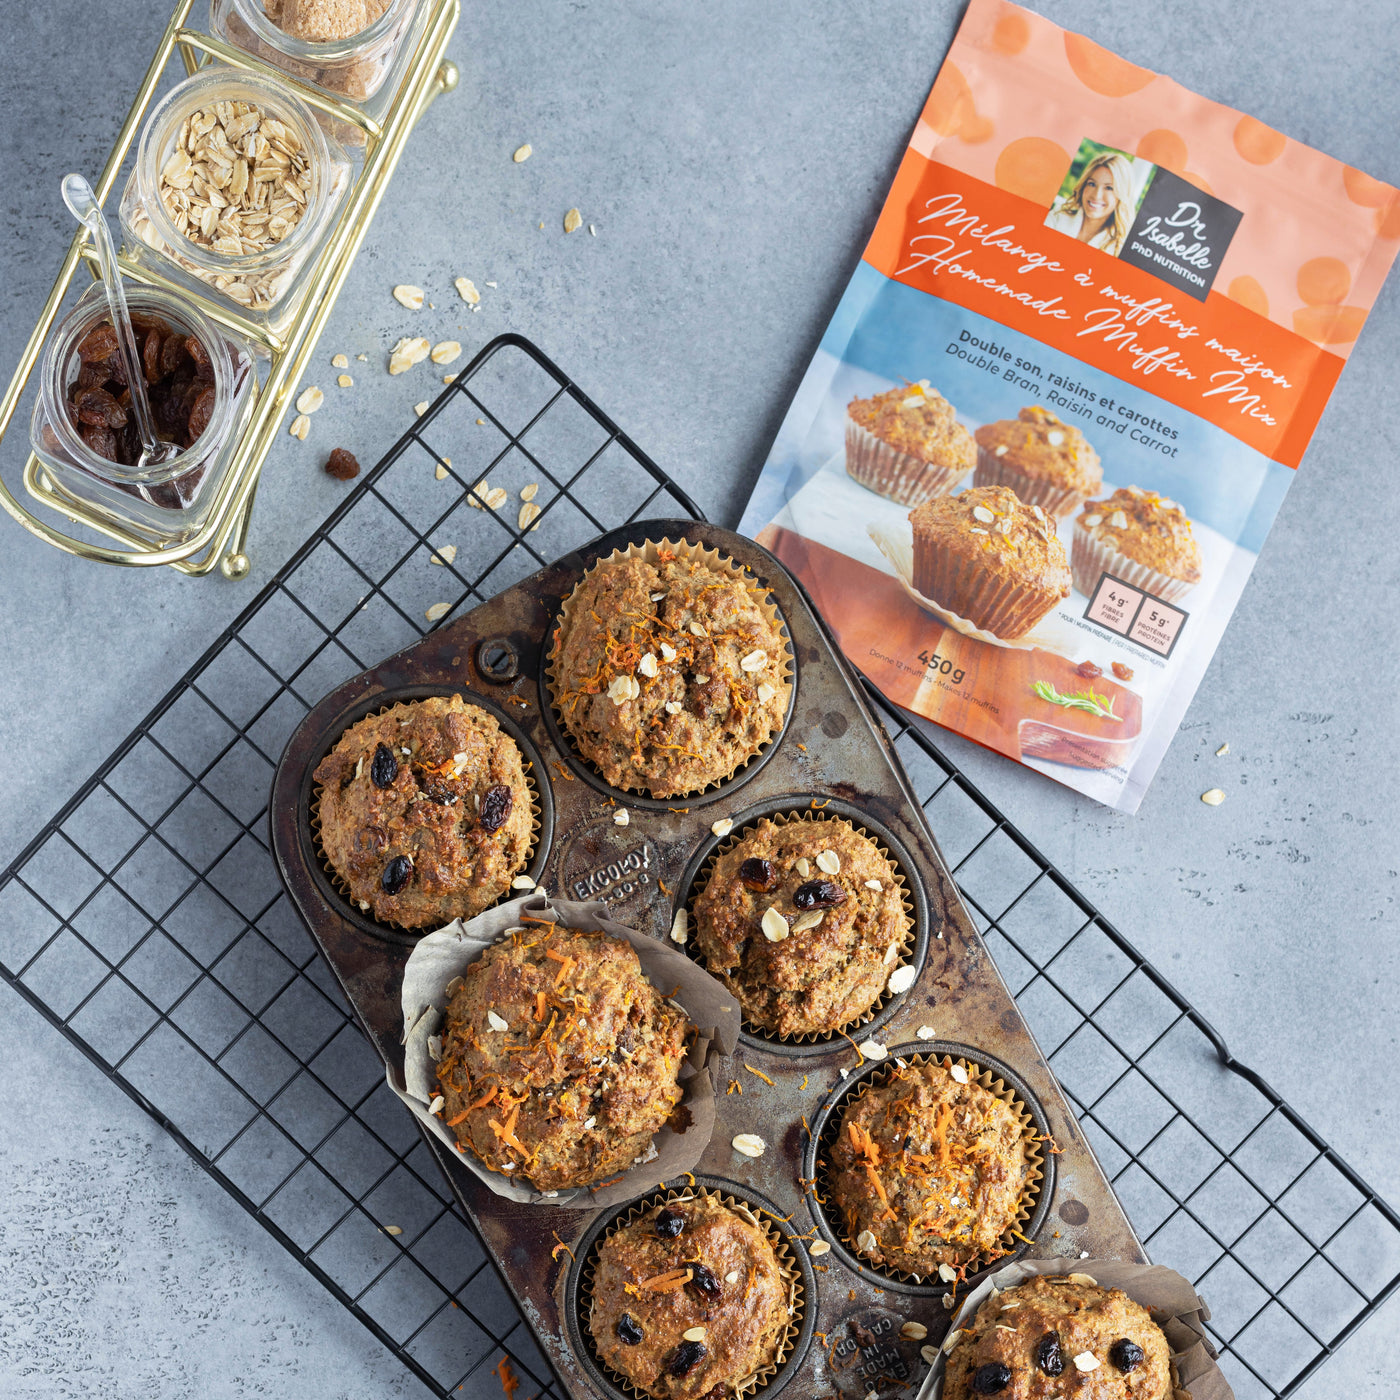 Muffins double son, raisins et carottes : une collation nutritive et savoureuse qui se prépare en quelques minutes seulement. Essayez les muffins d'Isabelle Huot Docteure en nutrition.